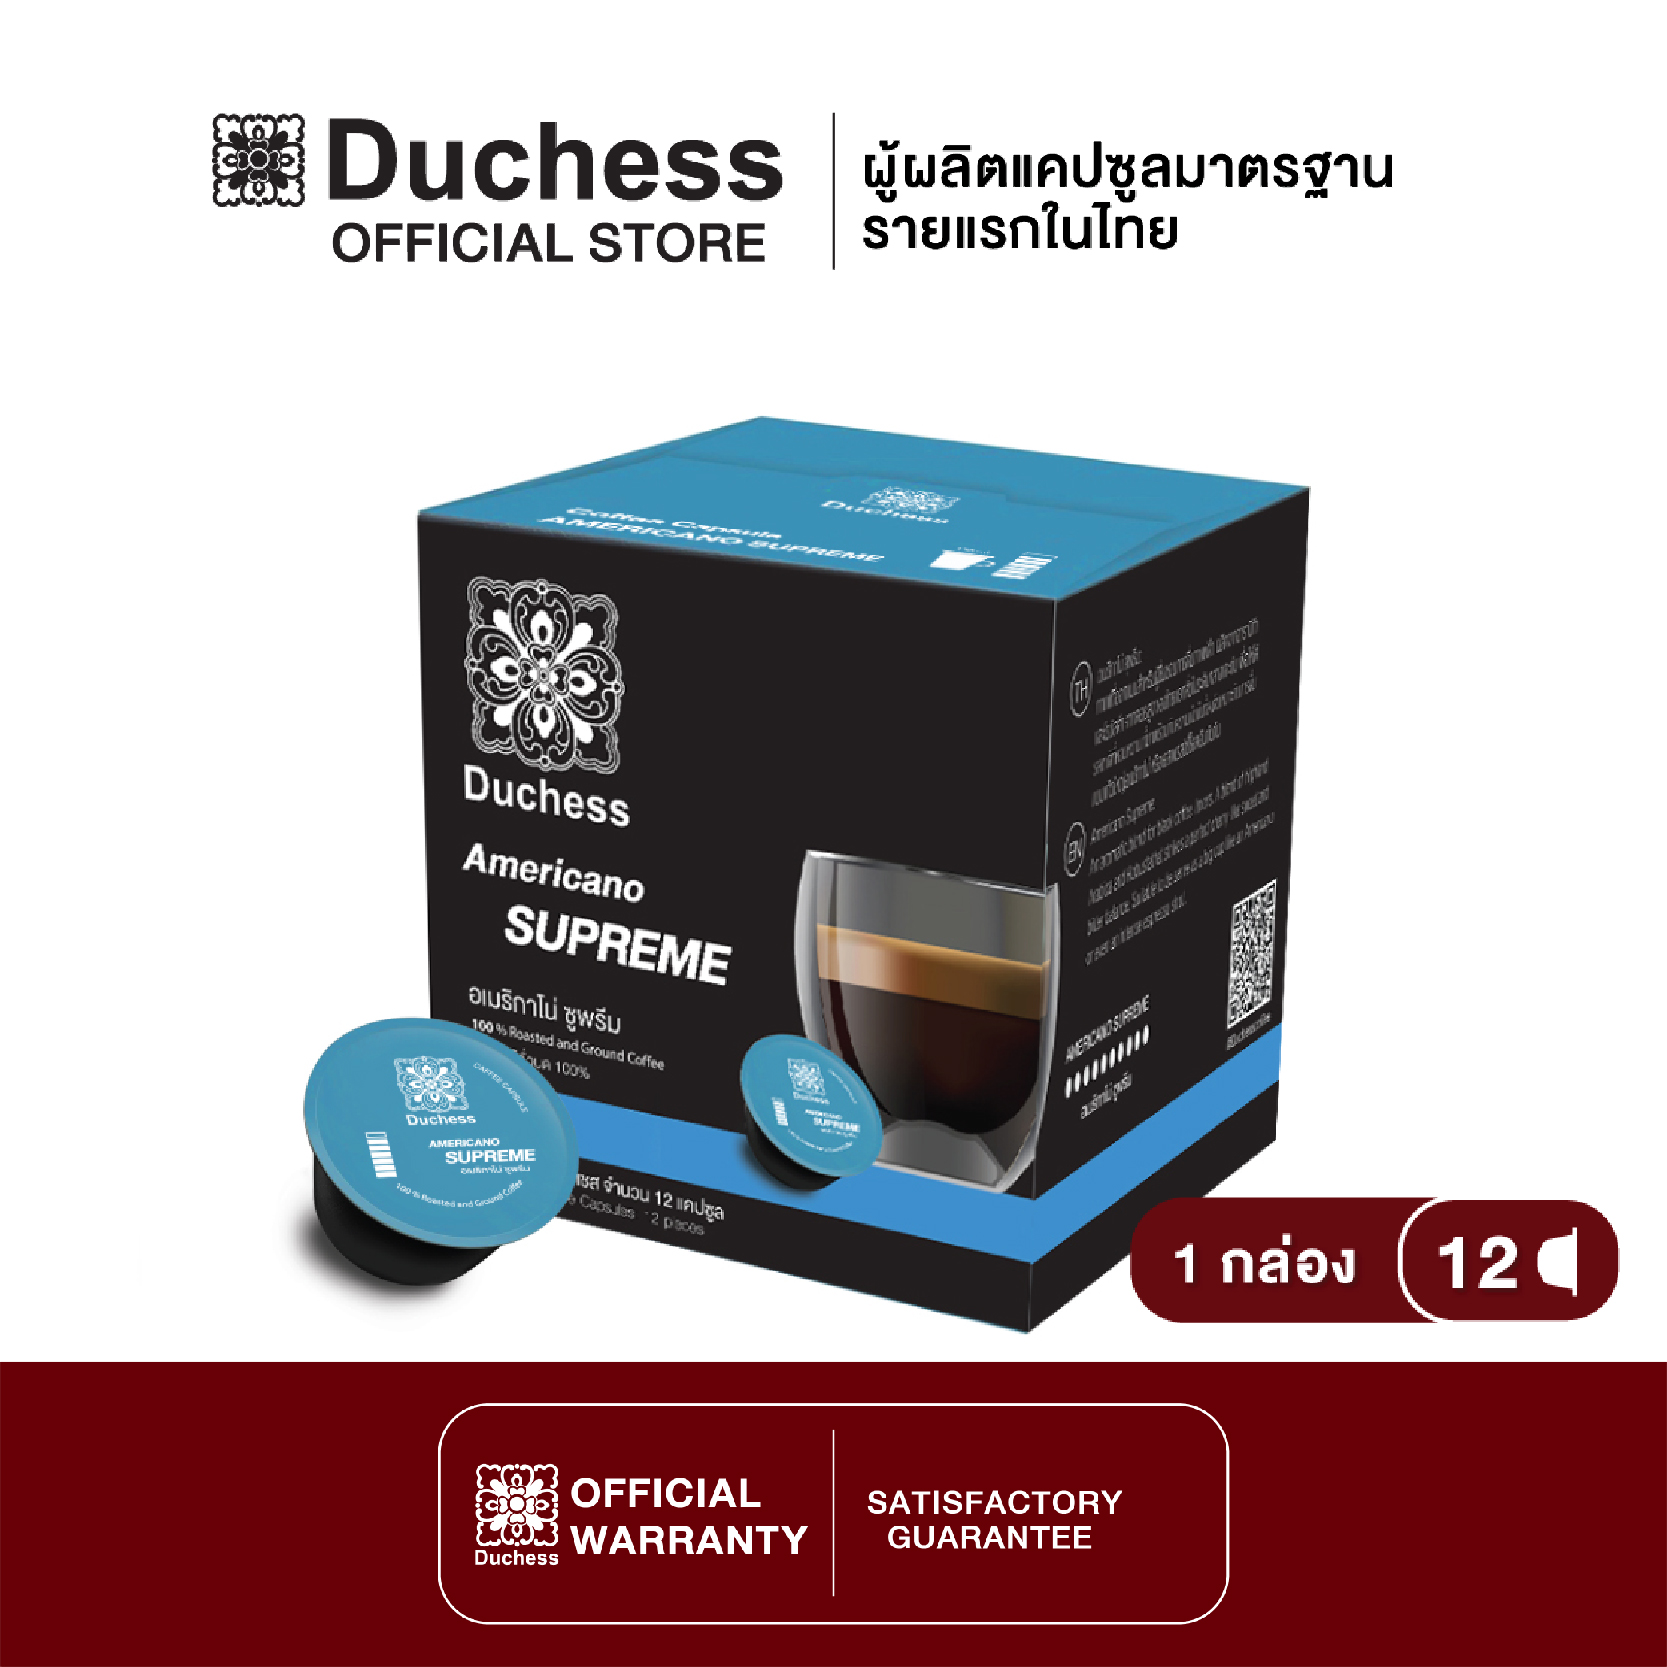 Duchess CO2003 - กาแฟแคปซูล 1 กล่อง (12 แคปซูล) - Americano Supreme (ใช้ได้กับ Nescafe Dolce Gusto เท่านั้น)